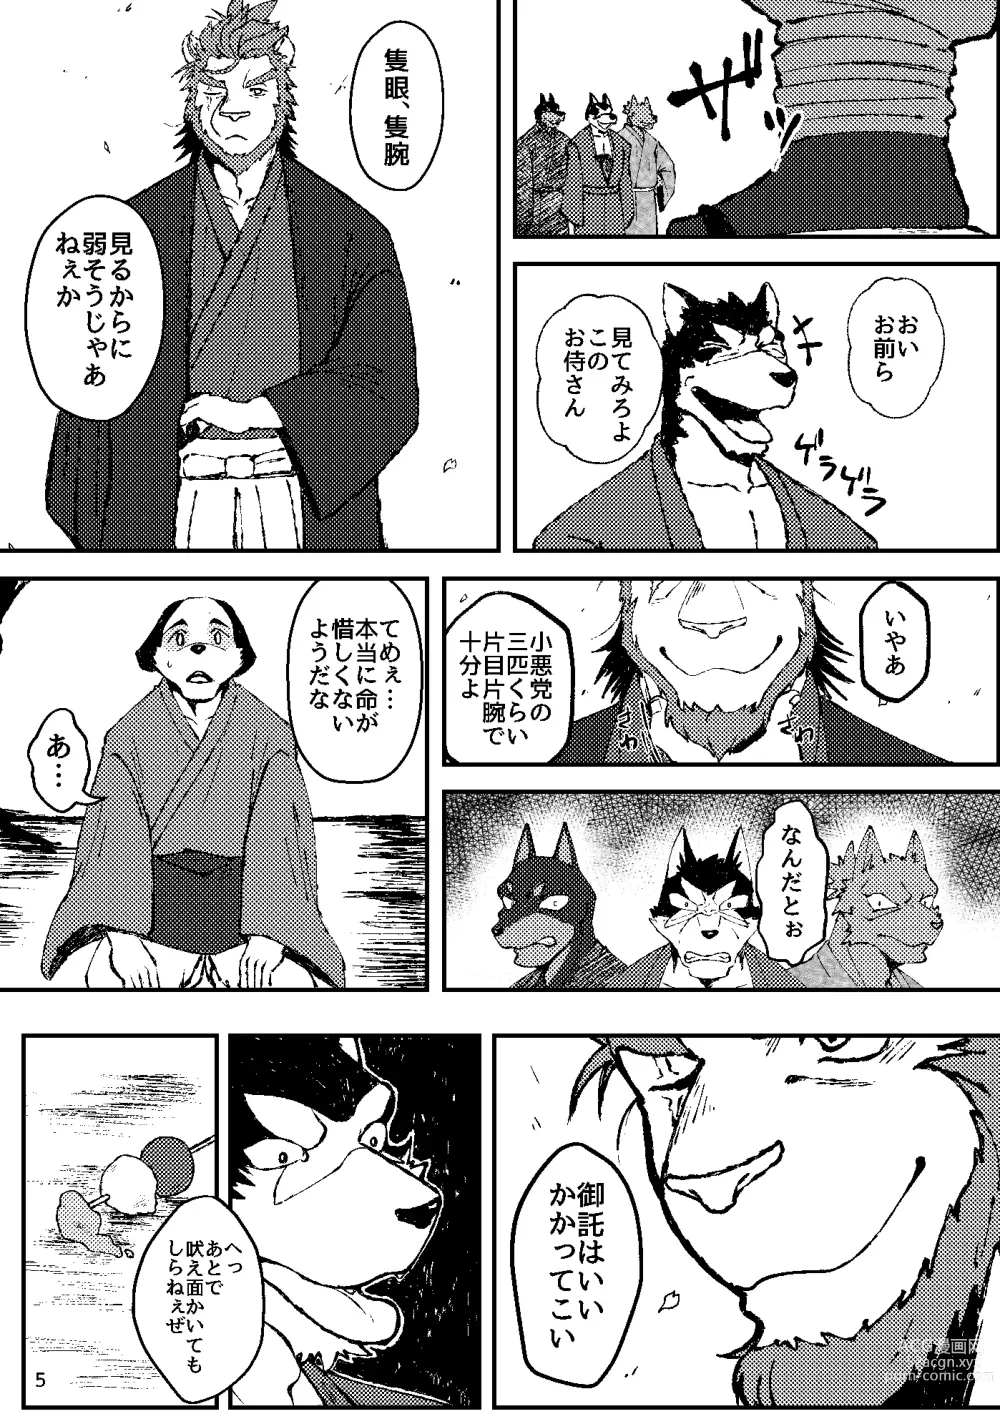 Page 5 of doujinshi KA.TA.NA. Ch. 1-2